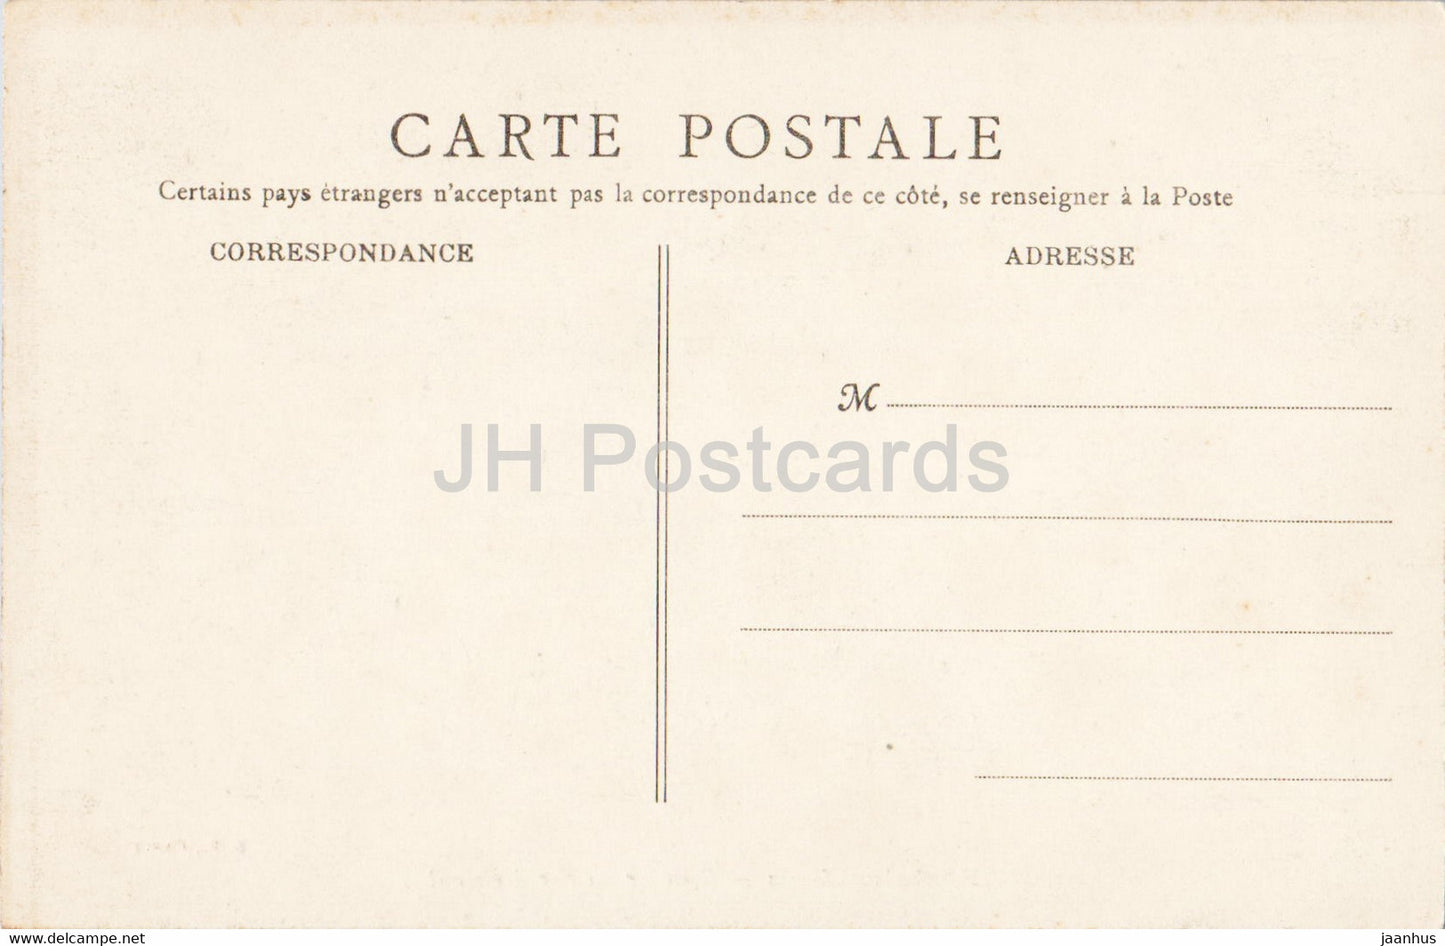 Fontainebleau - Escalier du Fer à cheval - carte postale ancienne - 1908 - France - inutilisée